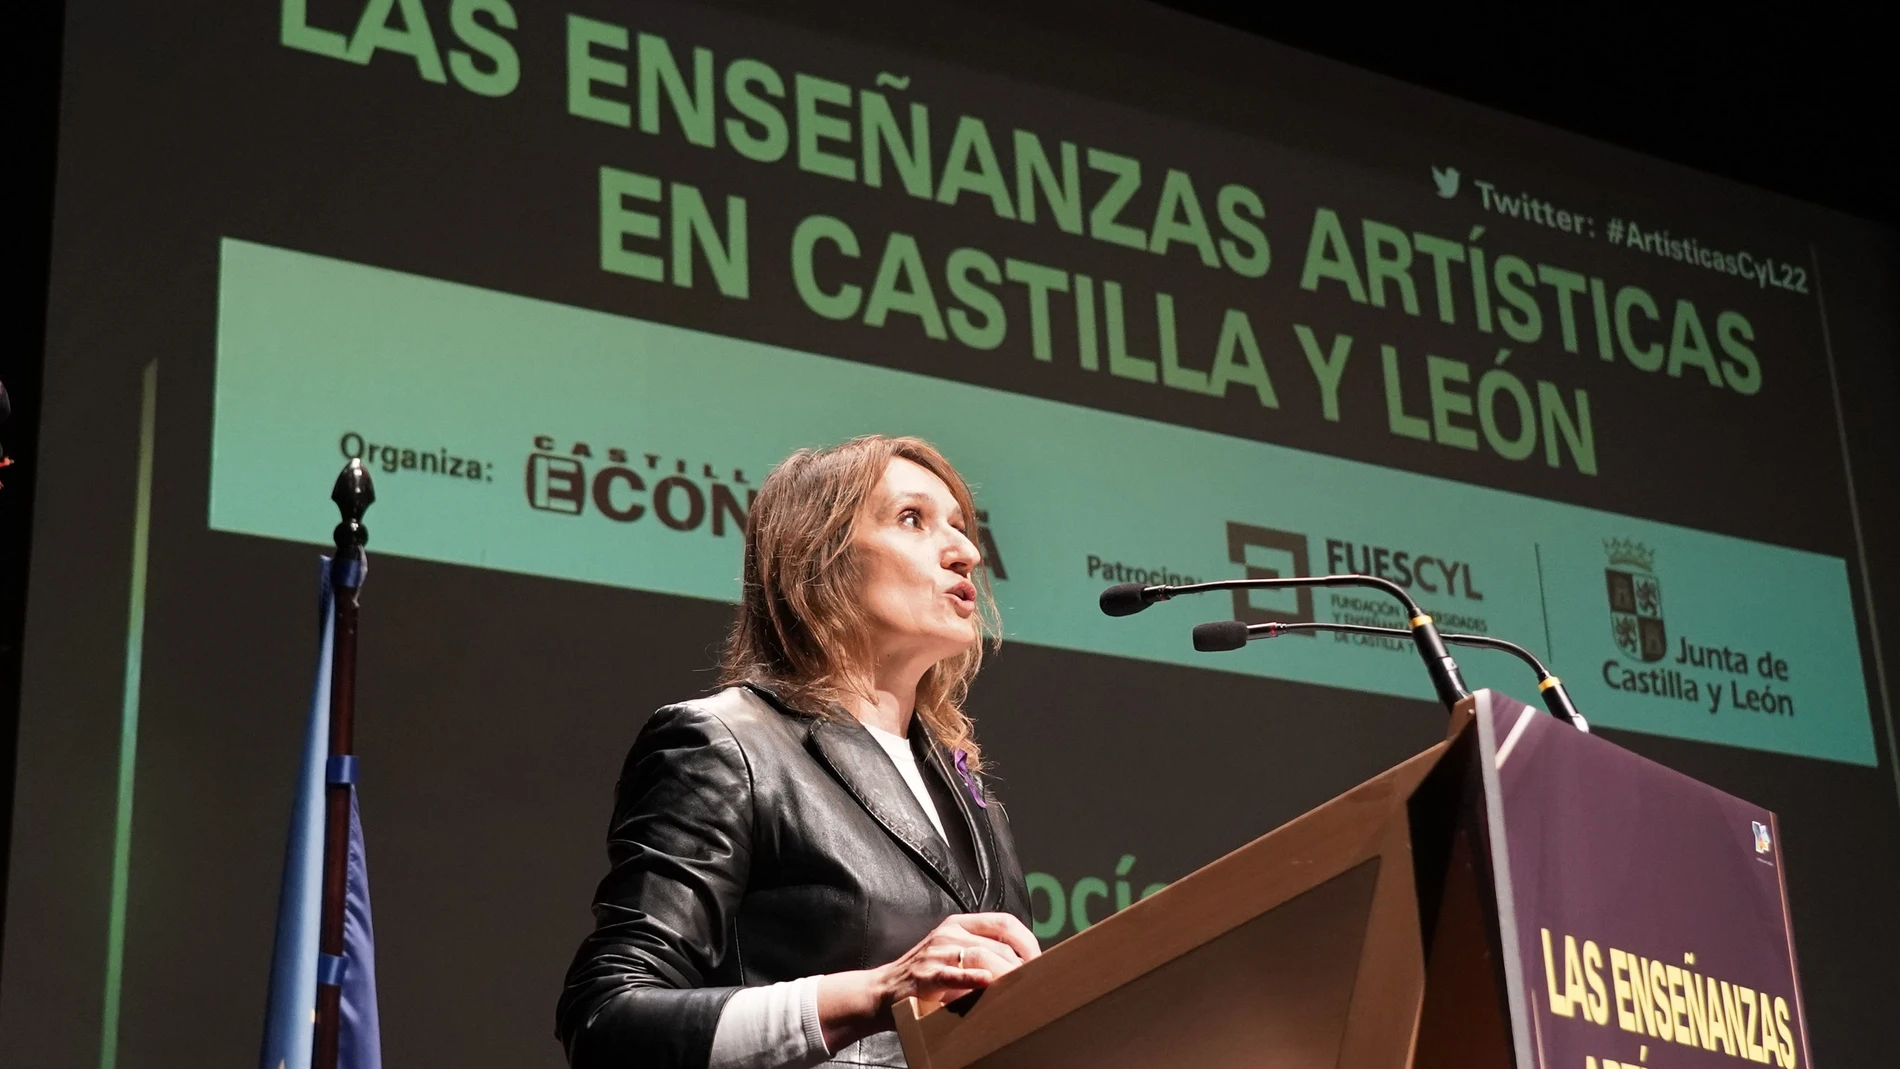 La consejera de Educación, Rocío Lucas, clausura la jornada "Las Enseñanzas Artísticas en Castilla y León"